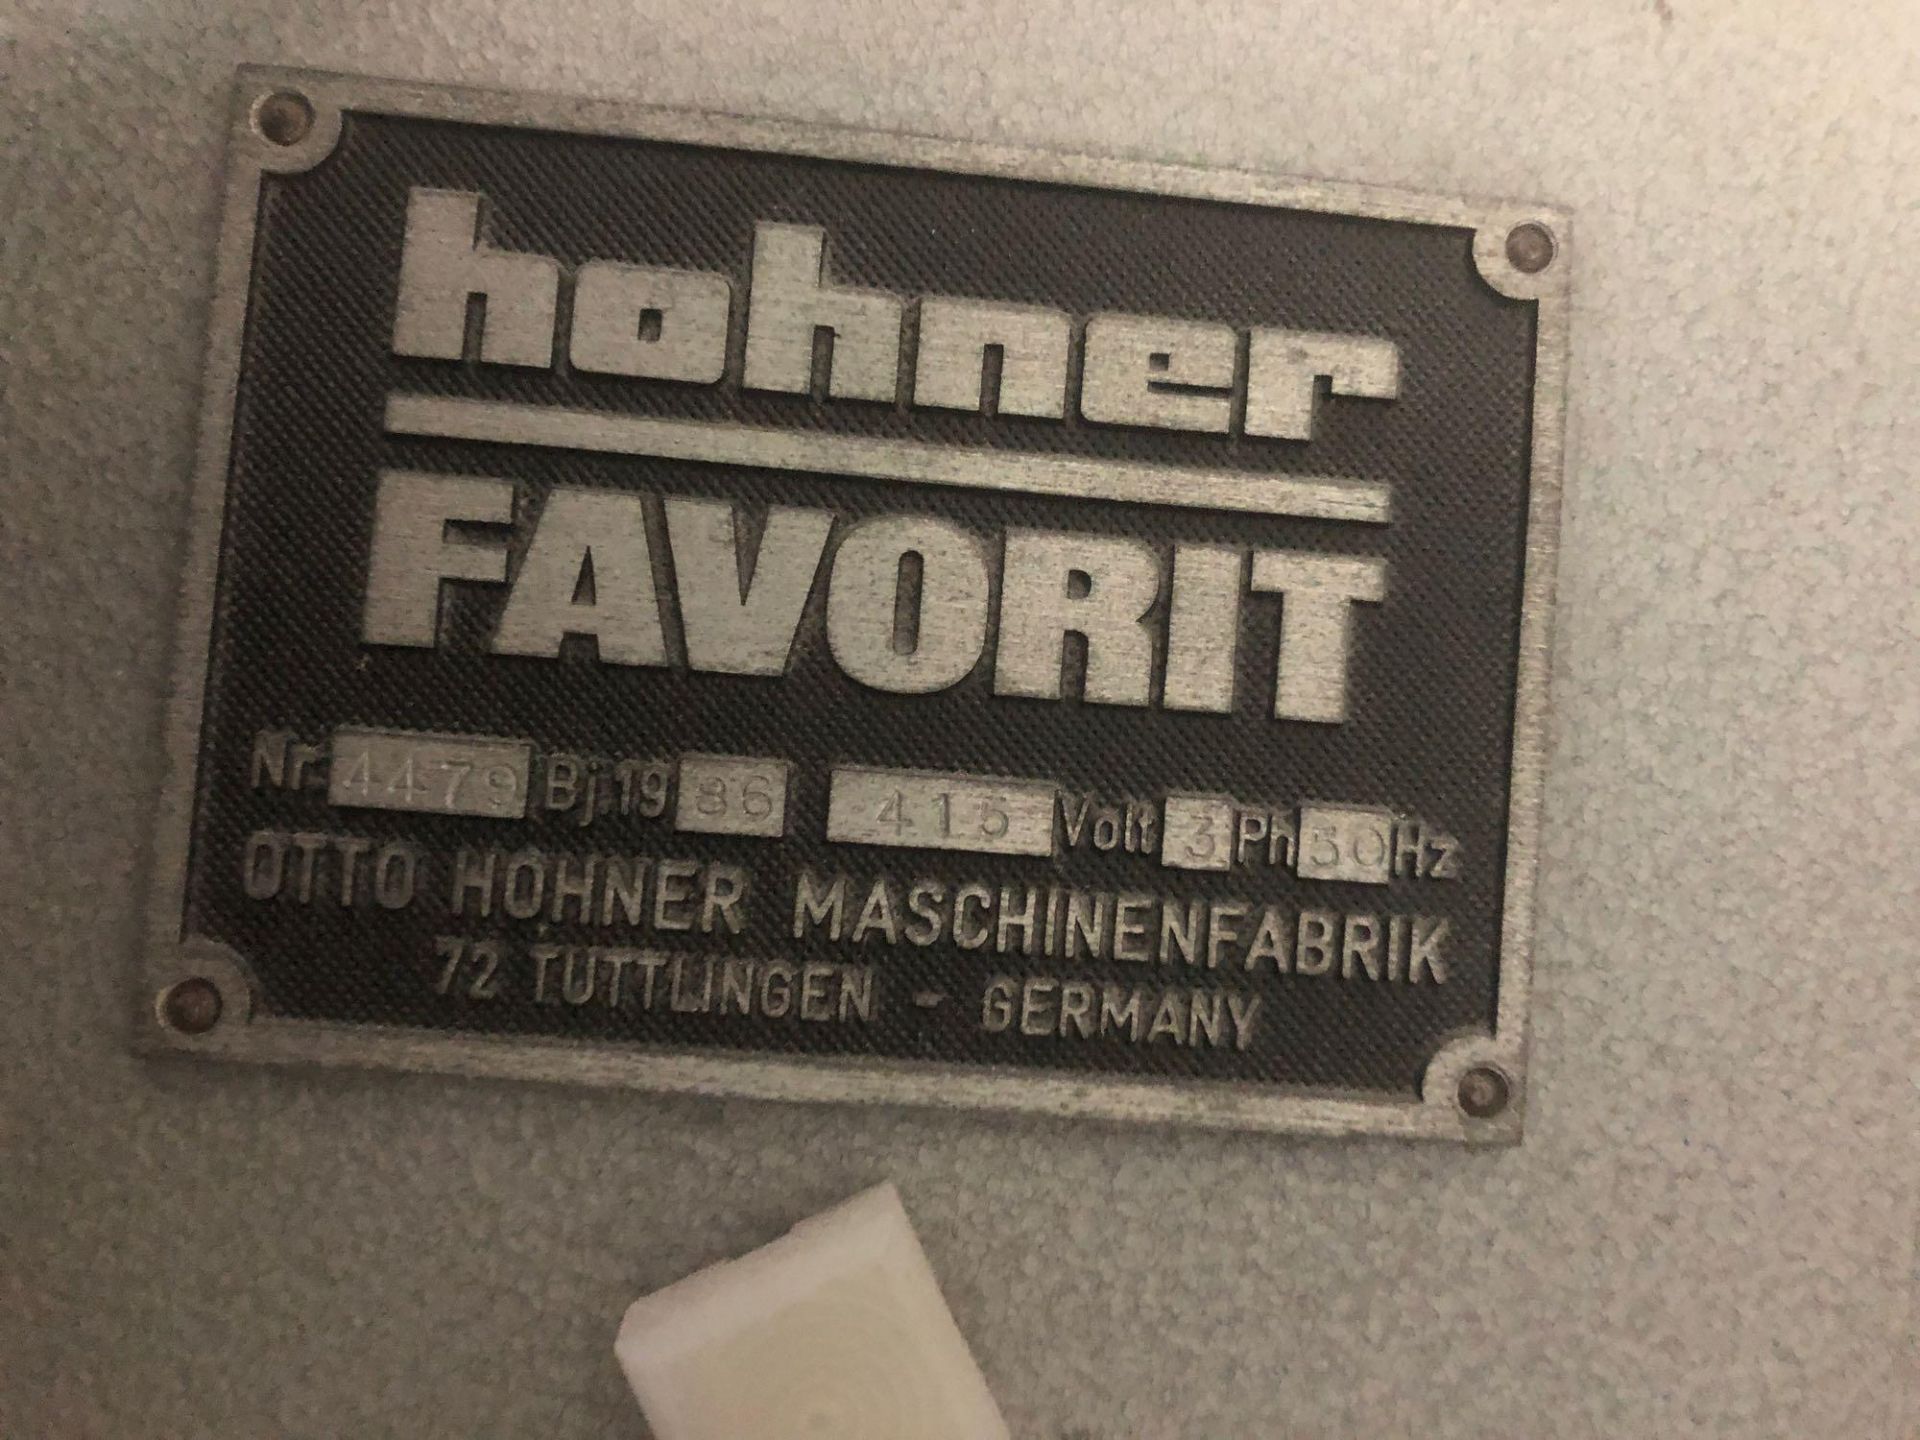 Hohner Favorit stitcher serial number 4479 - Image 3 of 4